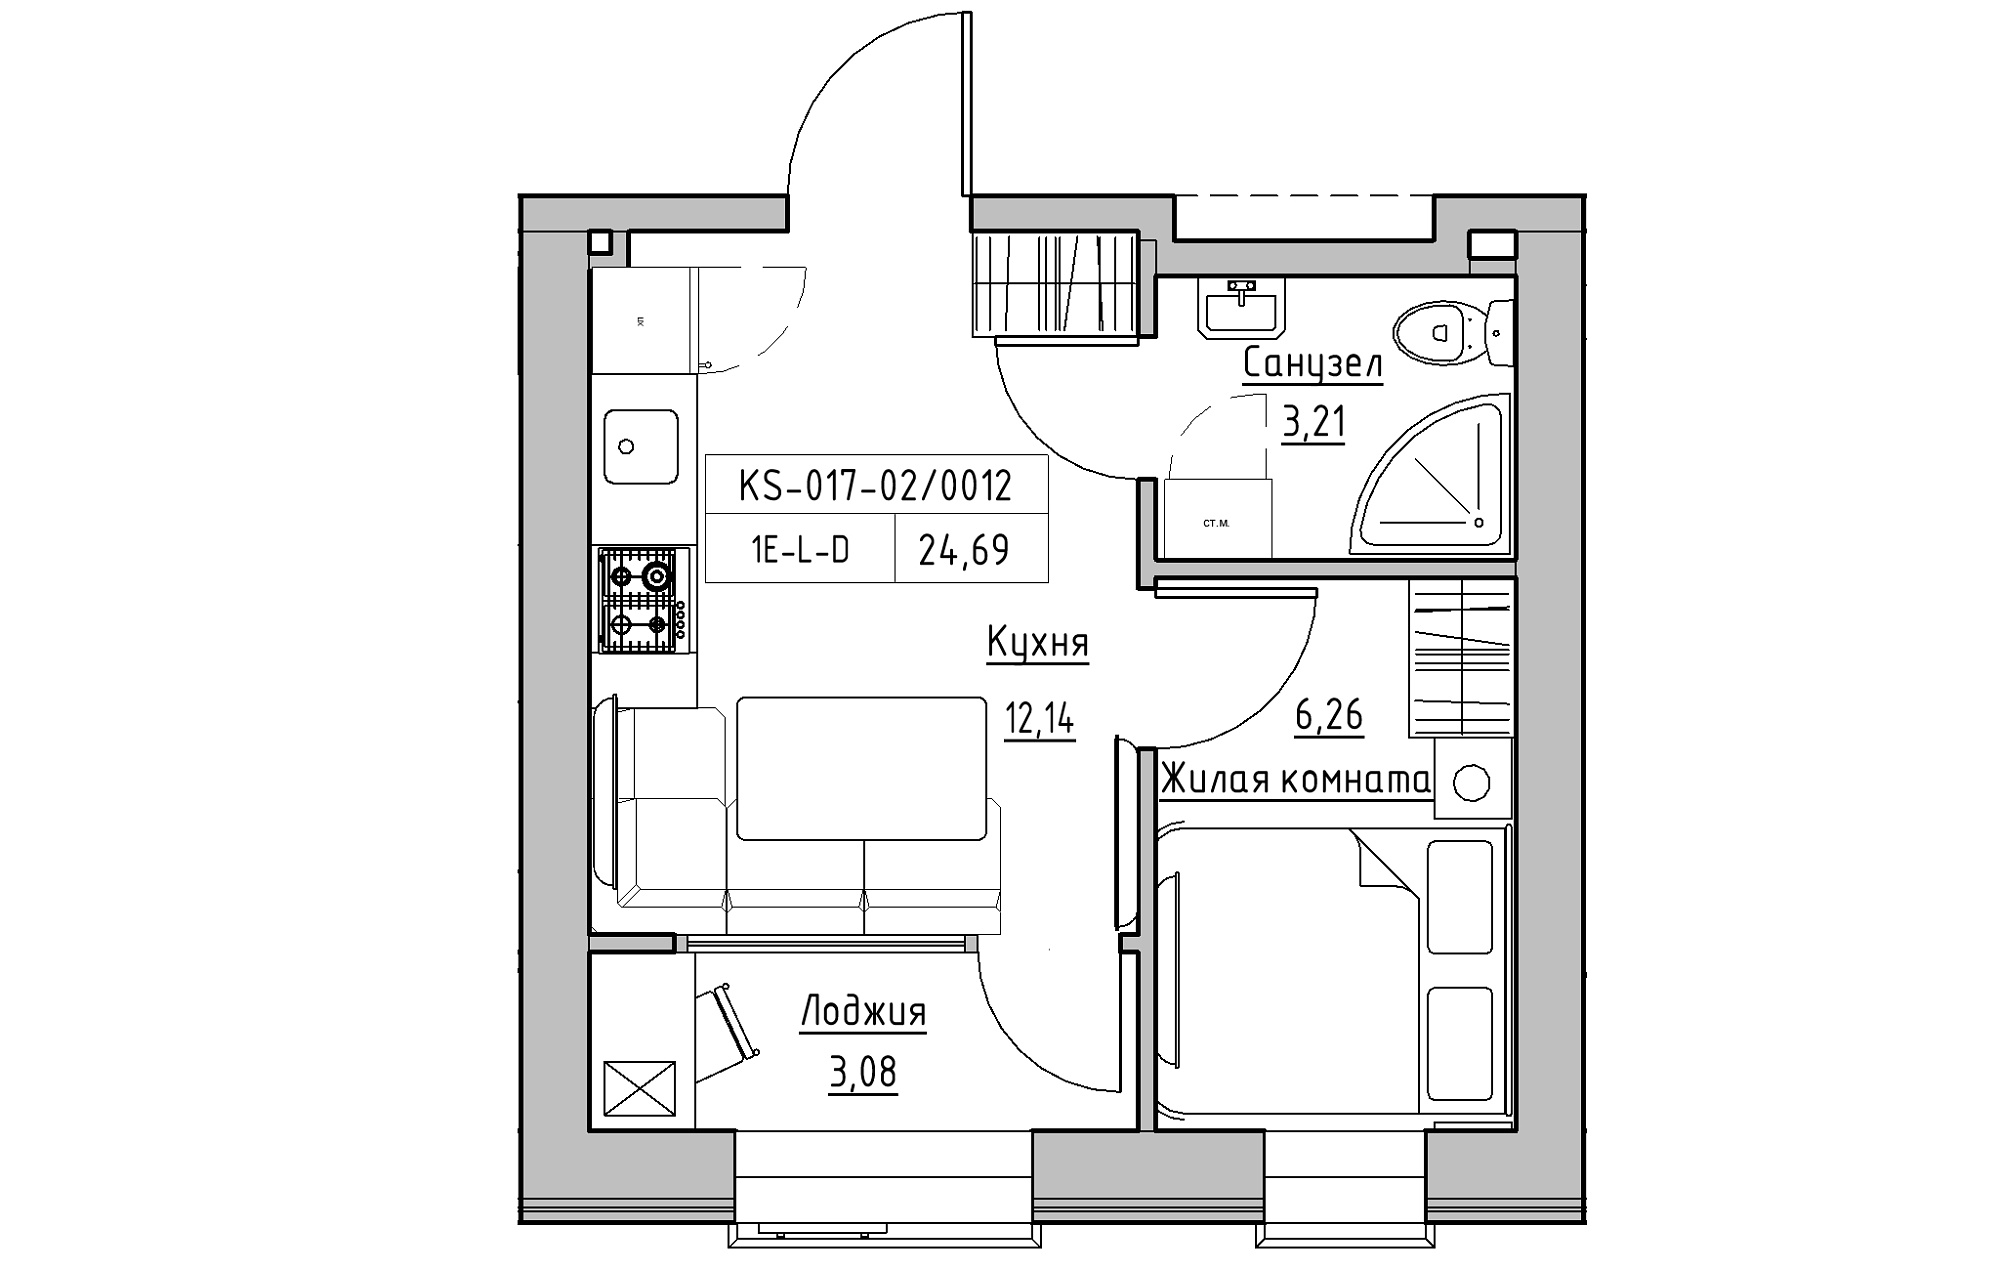 Планировка 1-к квартира площей 24.69м2, KS-017-02/0012.